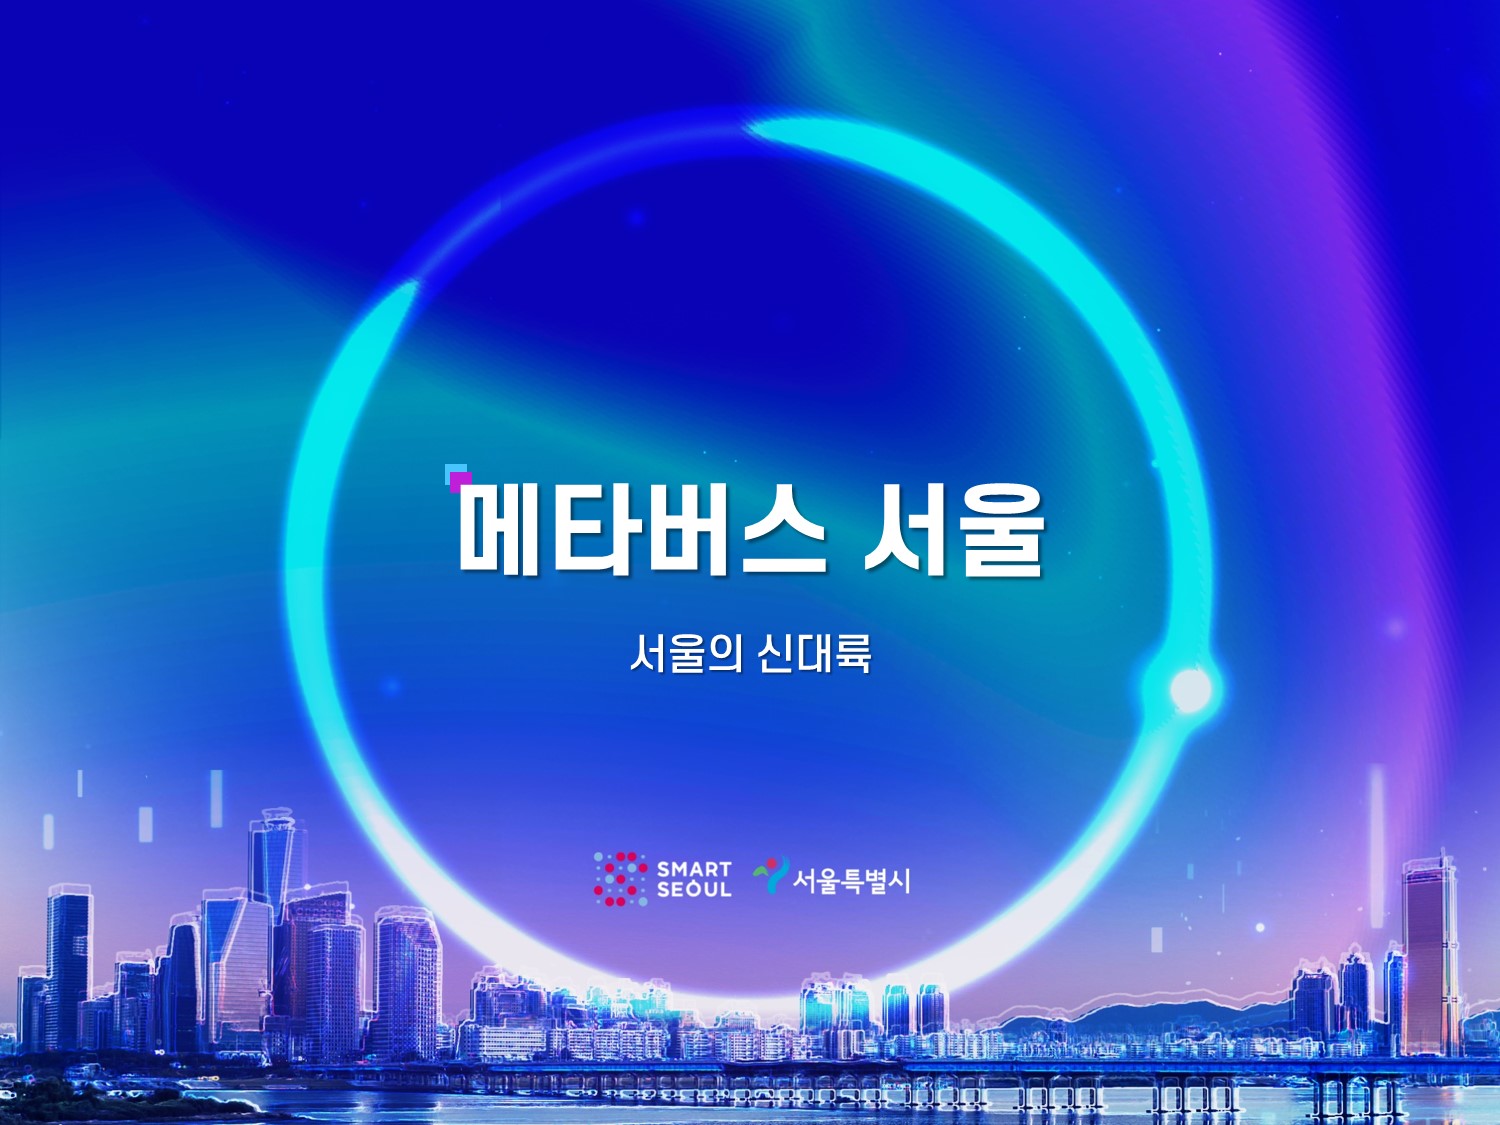 가상도시 서울(메타버스 서울)의 아바타를 골라주세요!